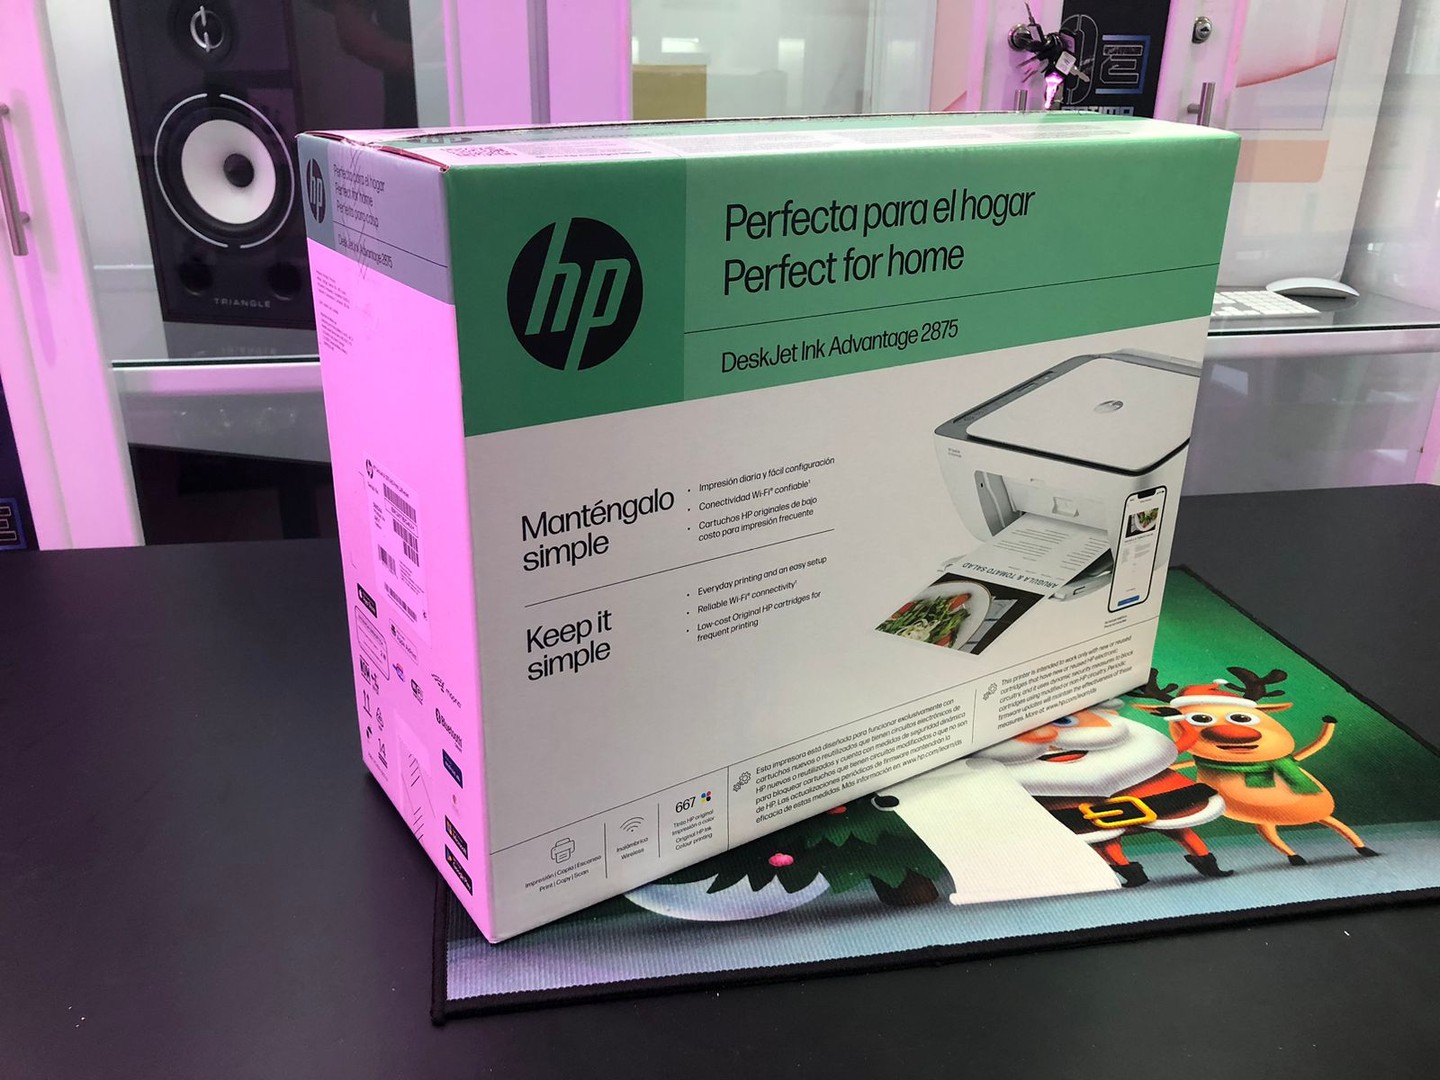 impresoras y scanners - Impresora Multifunción a wifi y Bluetooth HP 2875 Todo en 1, Nueva y Sellada 5